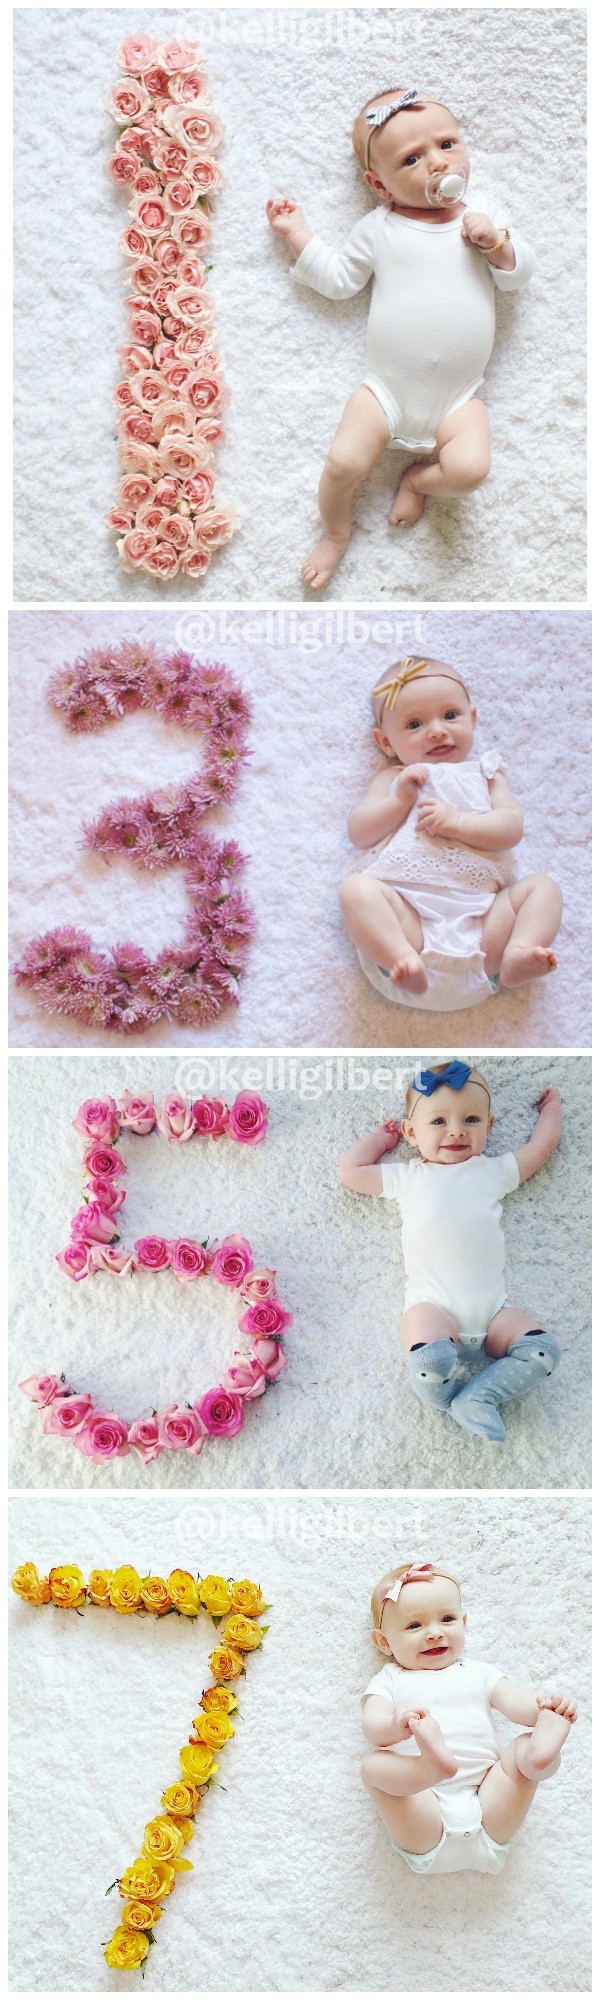 ideias para fotos mensais de bebês com pétalas de flores.